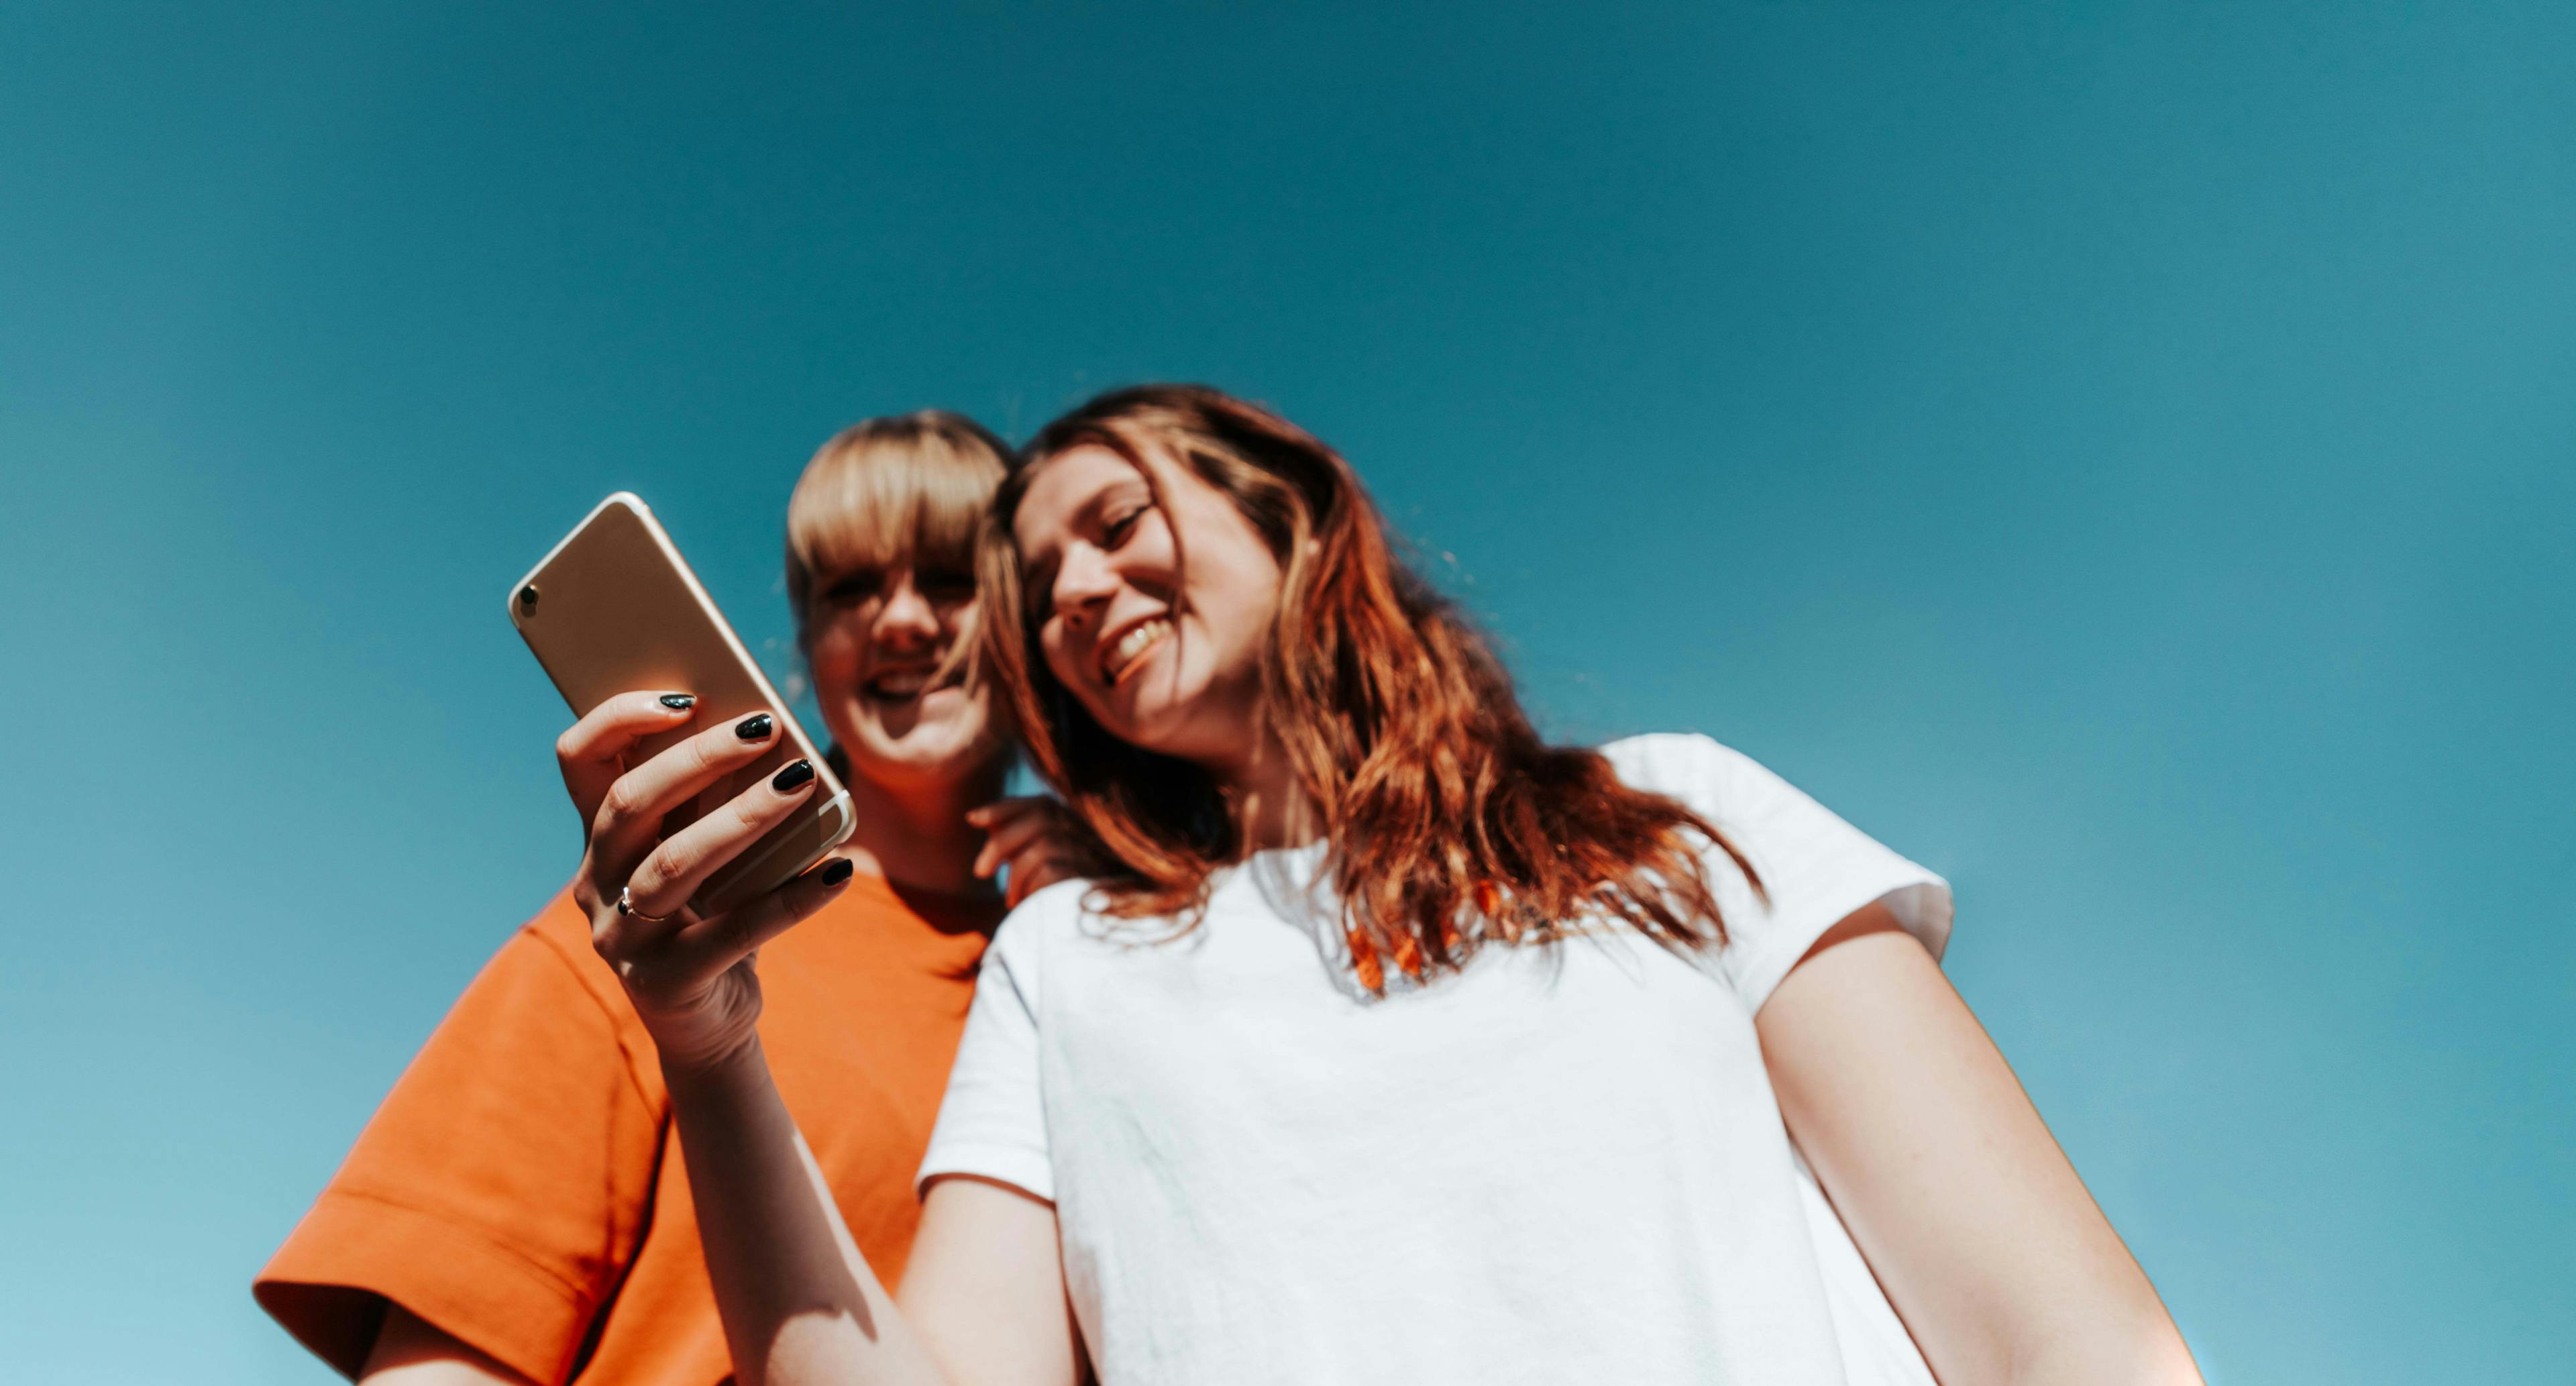 zwei junge Frauen schauen gemeinsam auf ein Smartphone und lachen. Der Hintergrund ist blau.